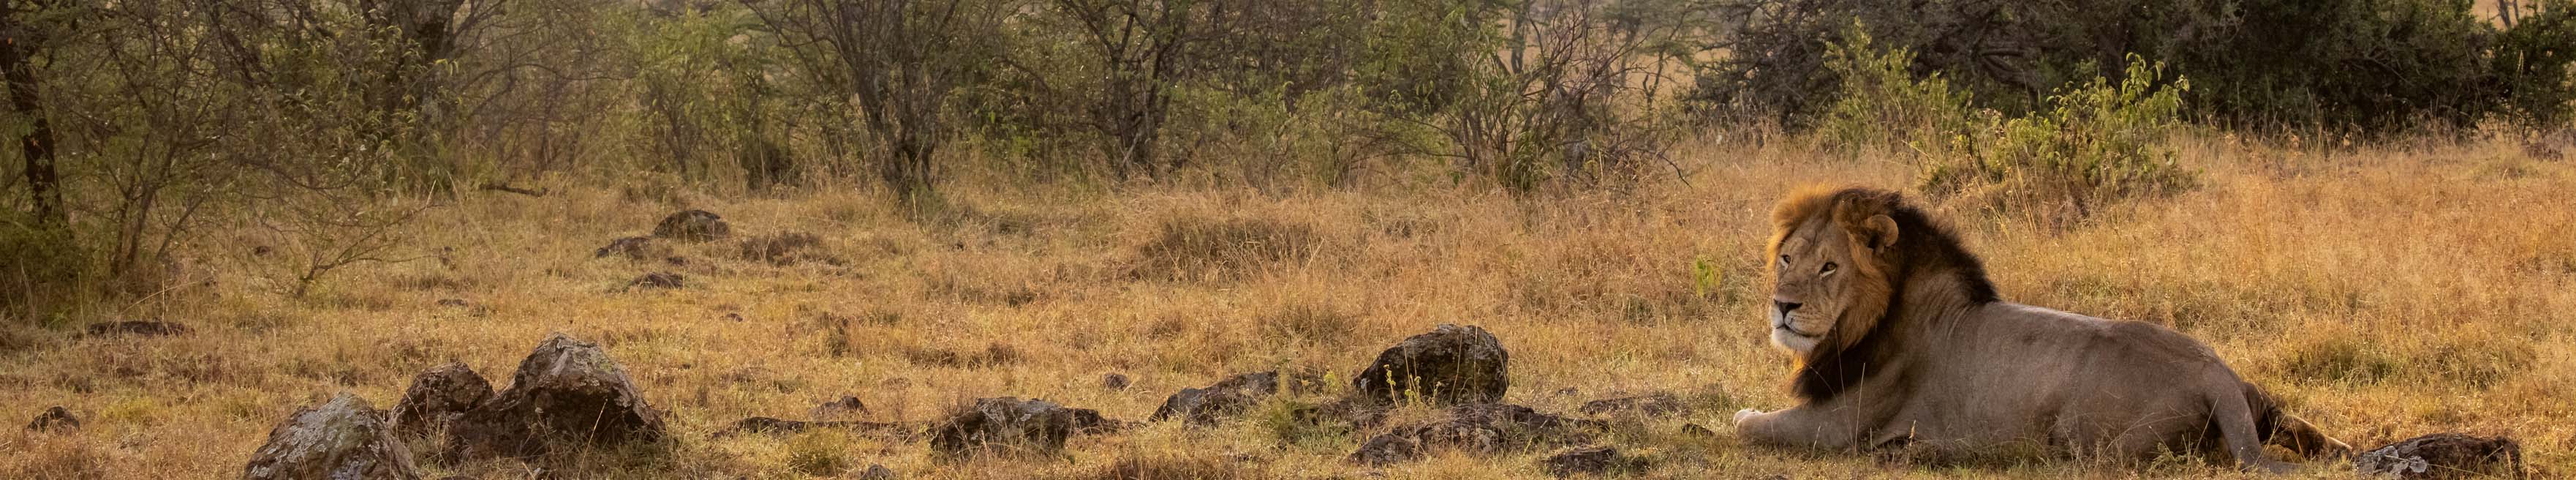 Masai Mara safari reviews